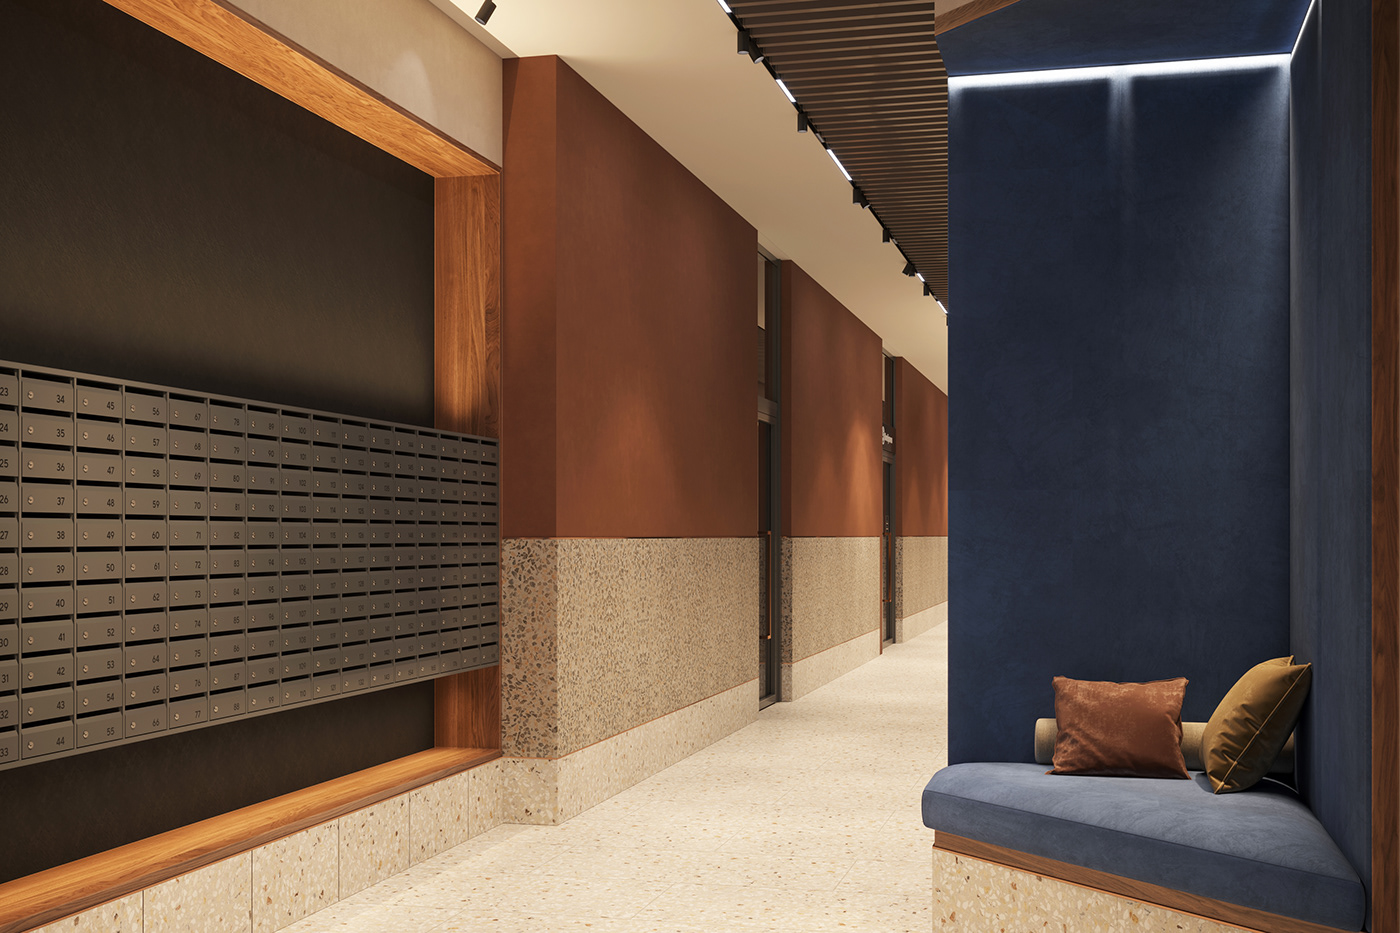 3D 3ds max architecture corona design granum Interior interior design  Render visualization